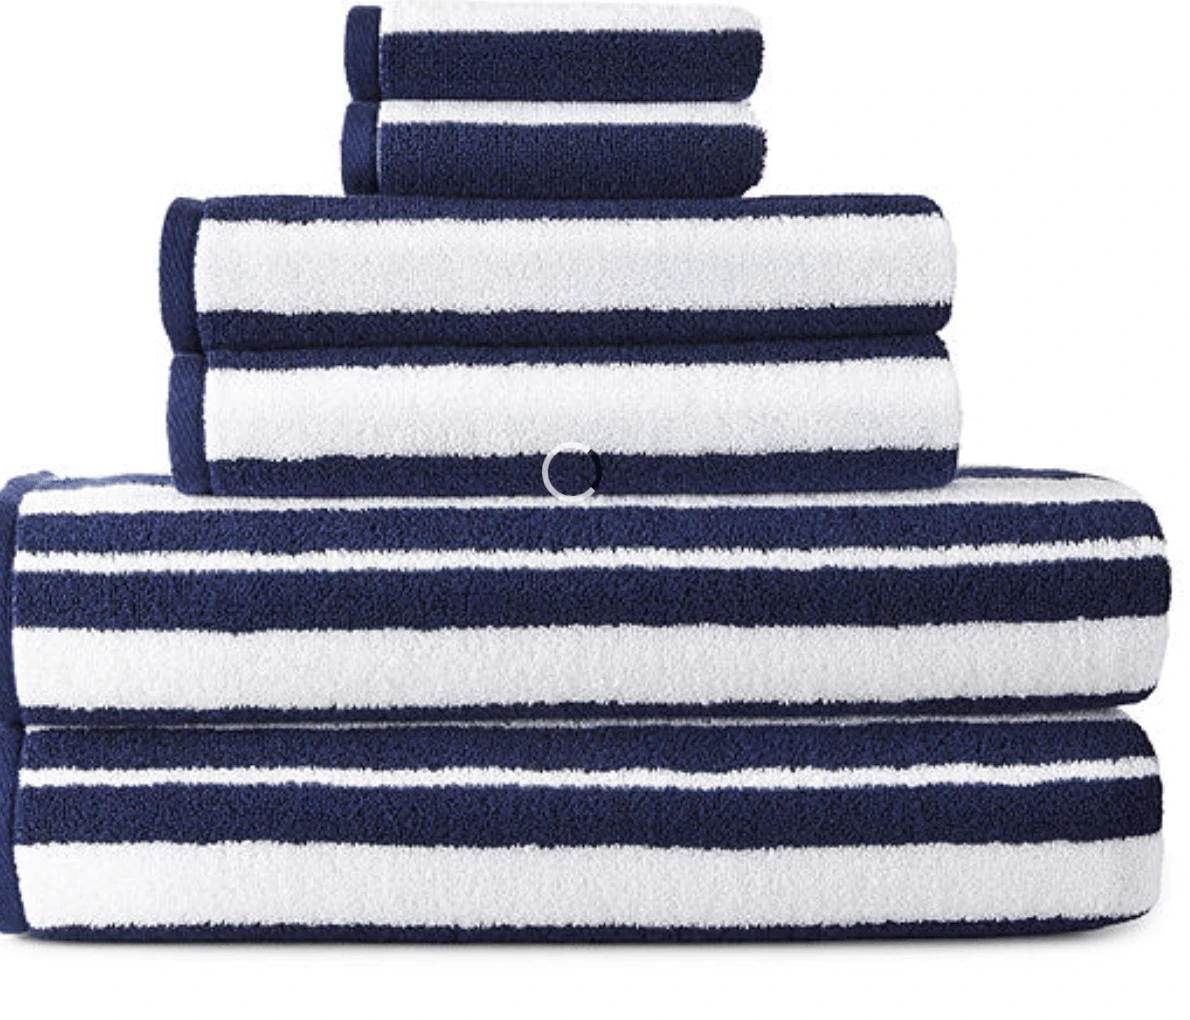 JCP Bath Towel Sale